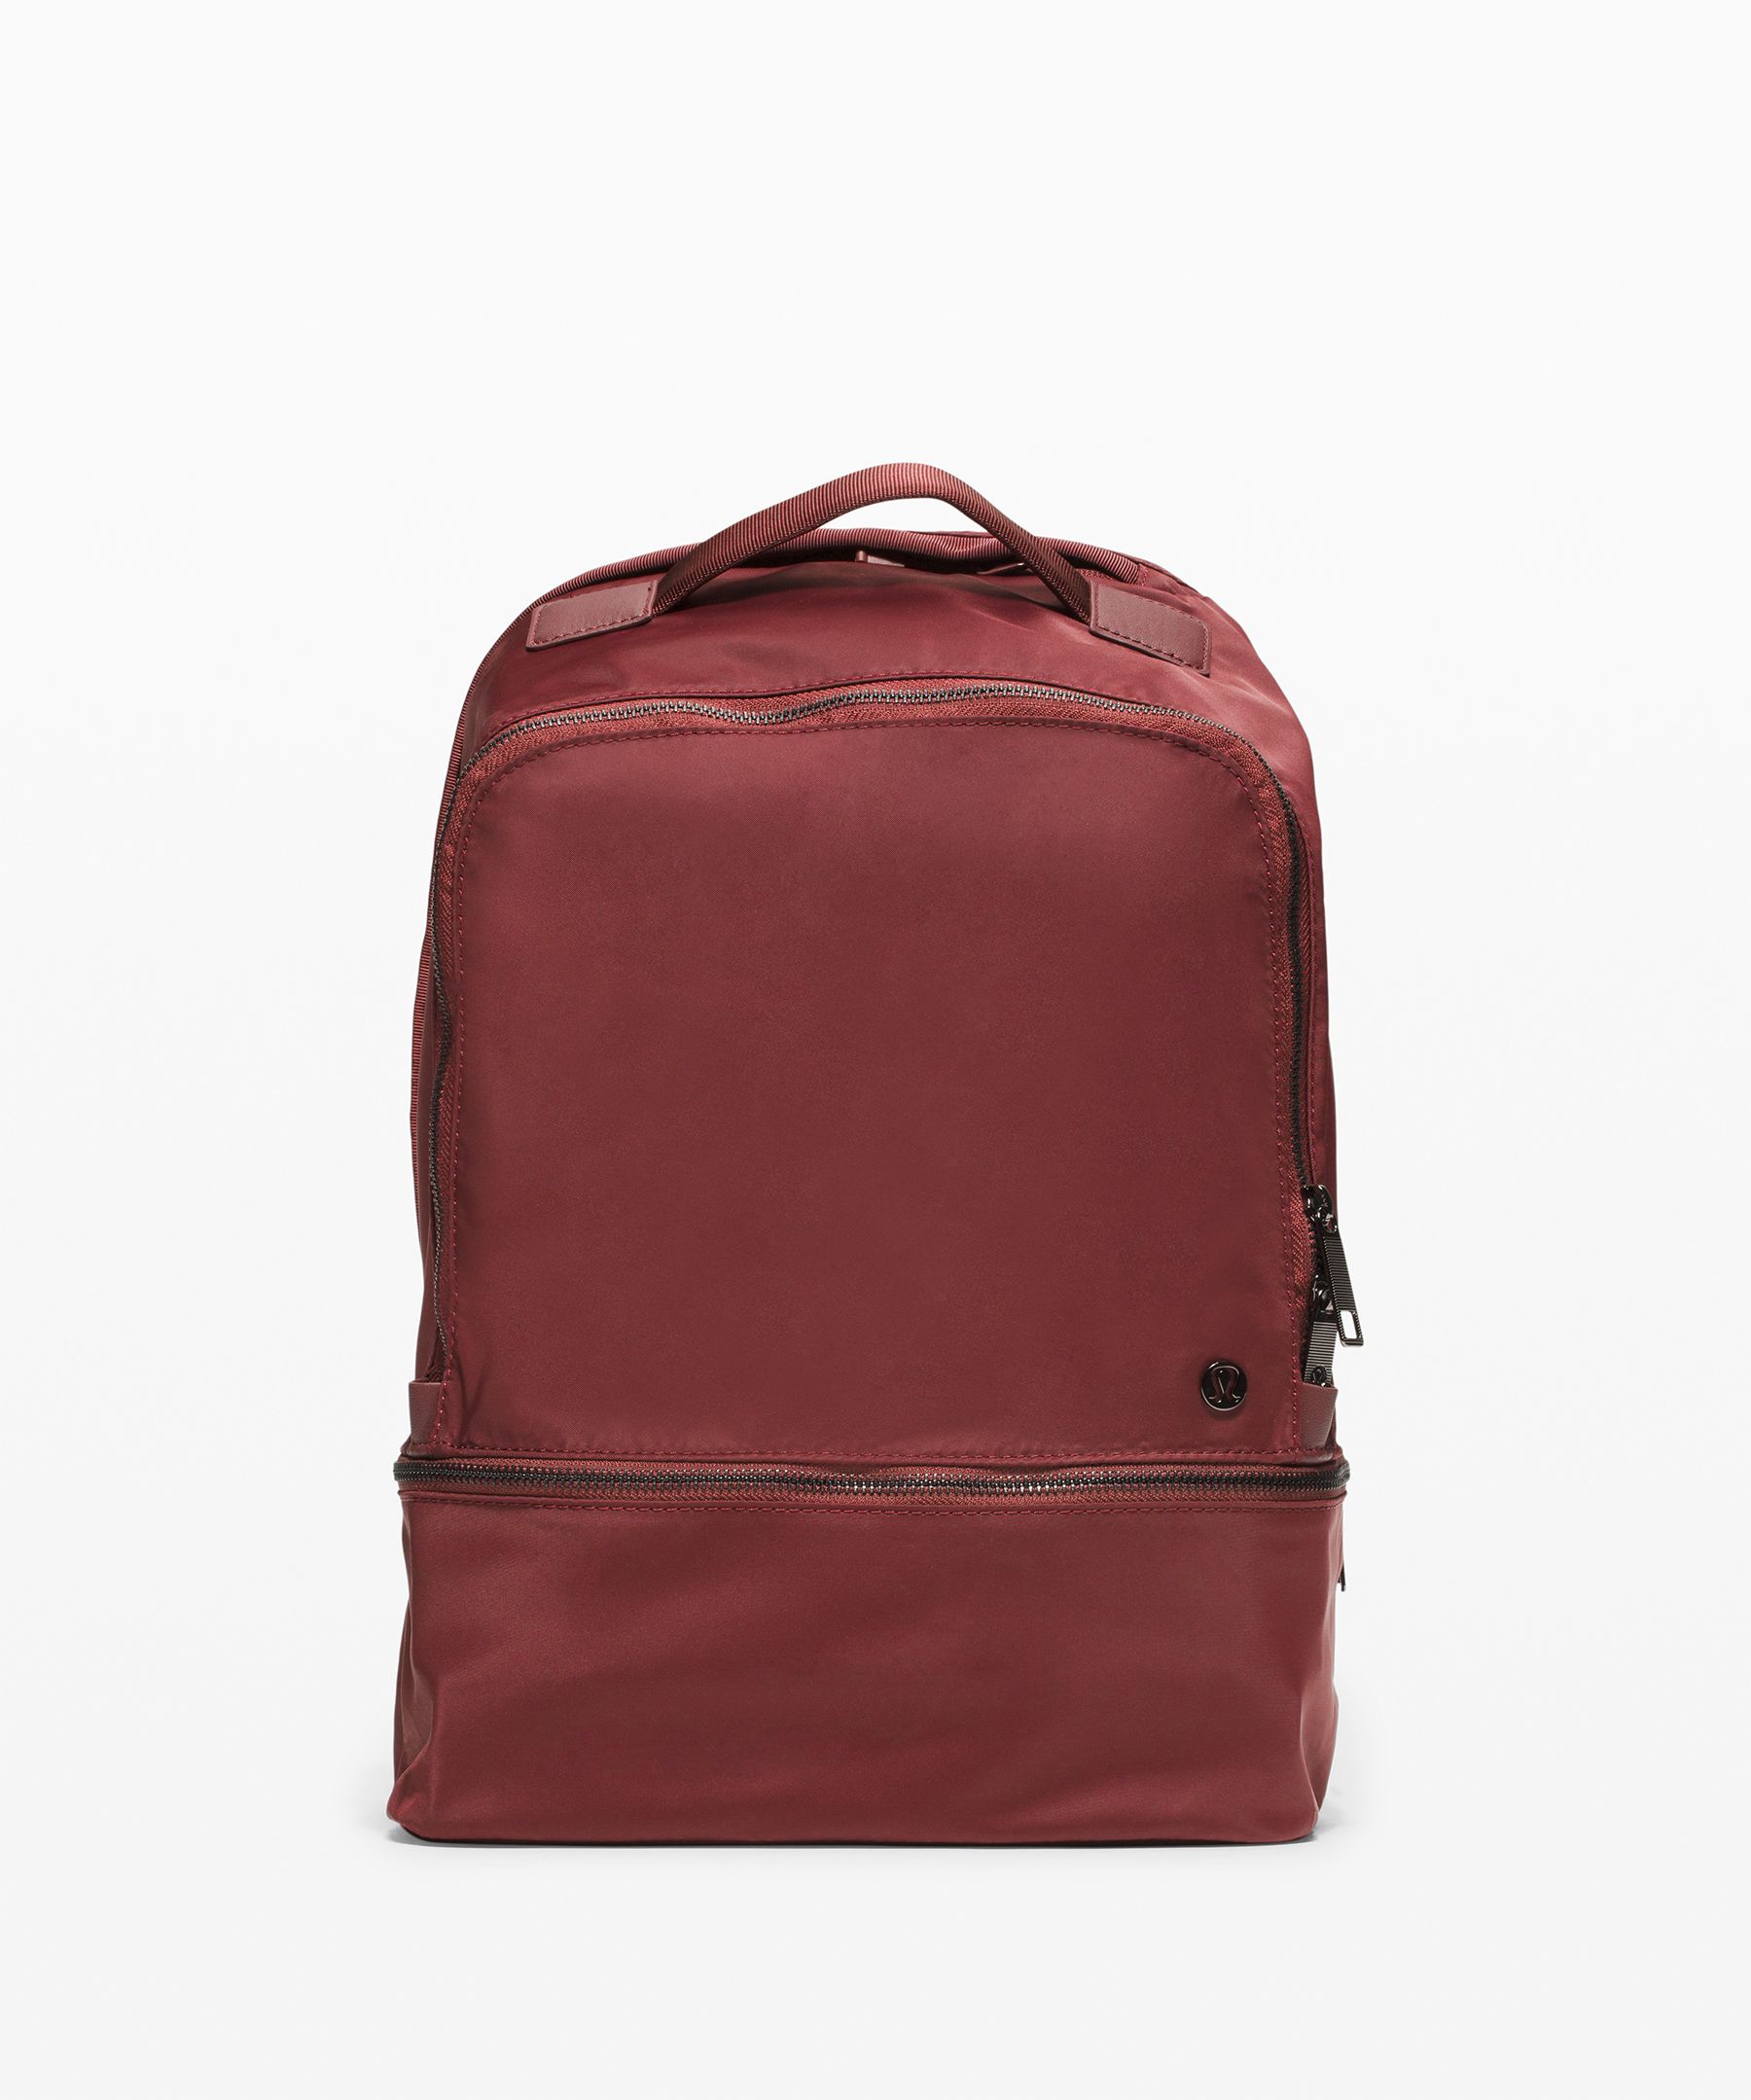 lululemon city adventurer backpack 17l